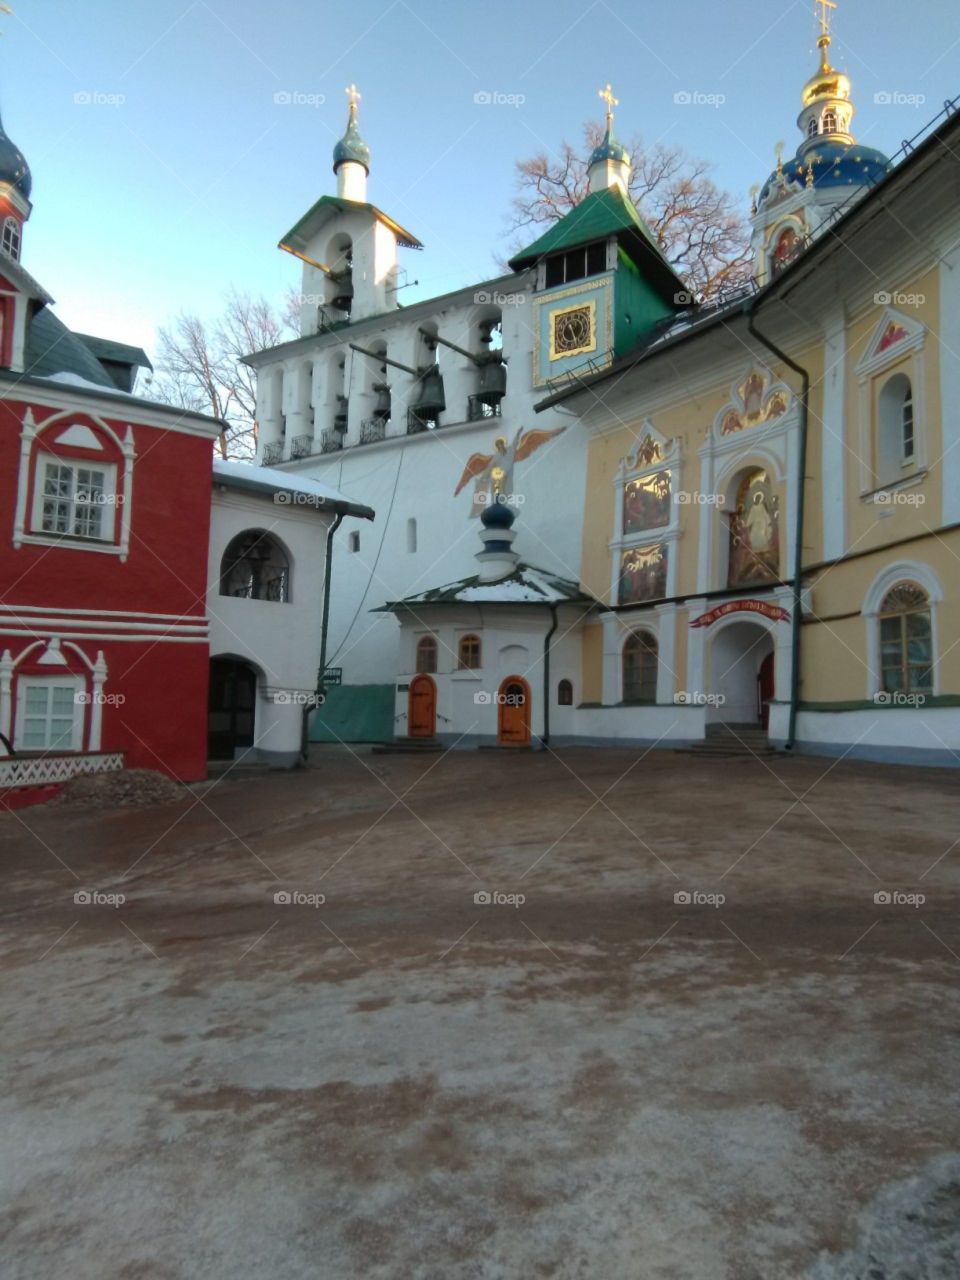 Pskov-pechorsk monastery. Belfry